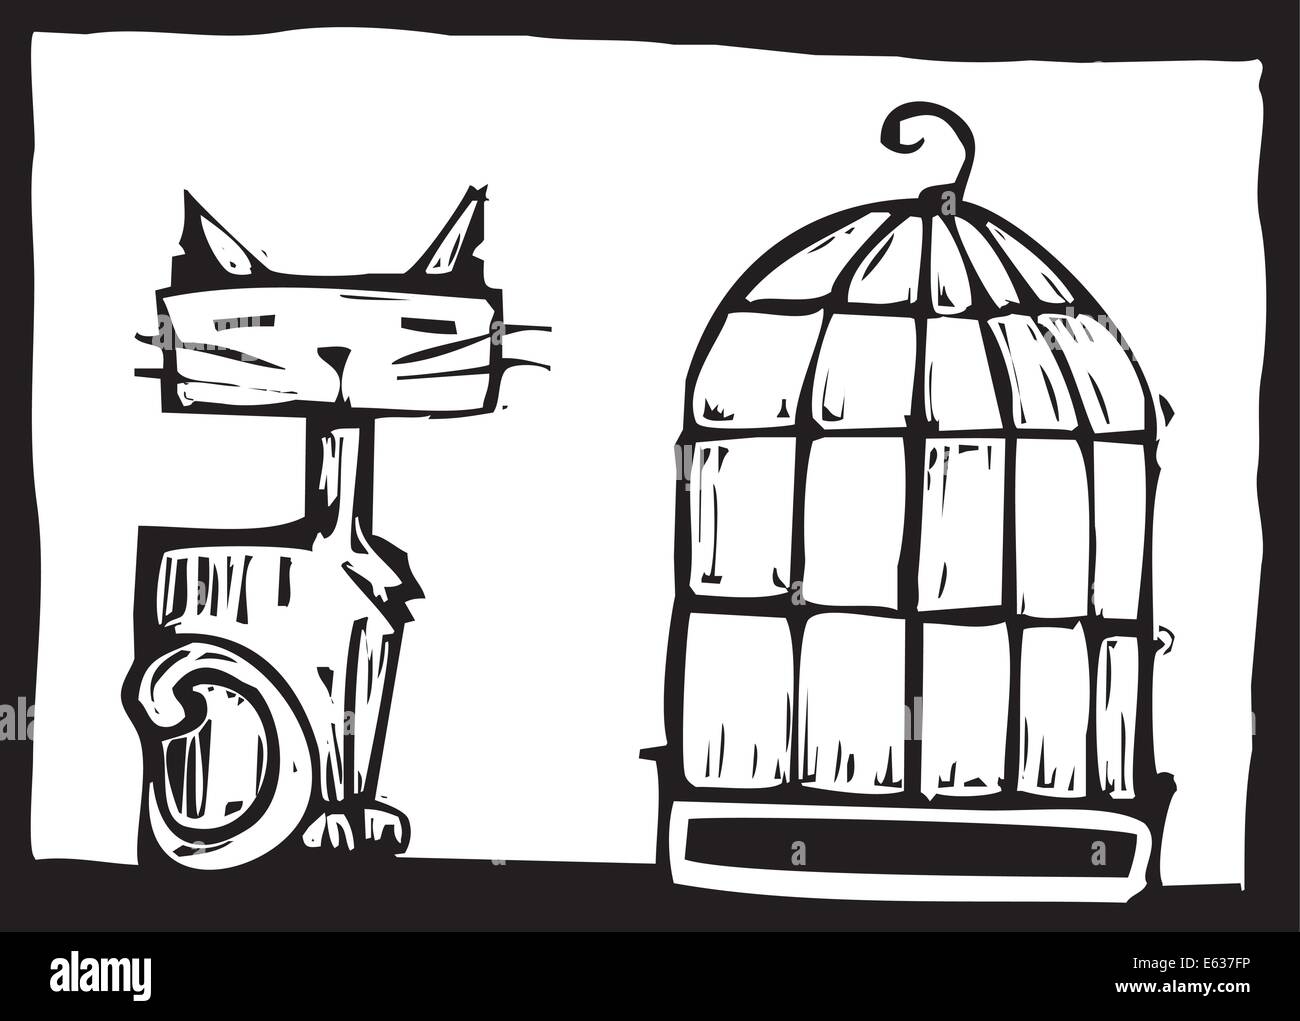 Aftert eh fait image d'un chat et d'une cage vide Illustration de Vecteur